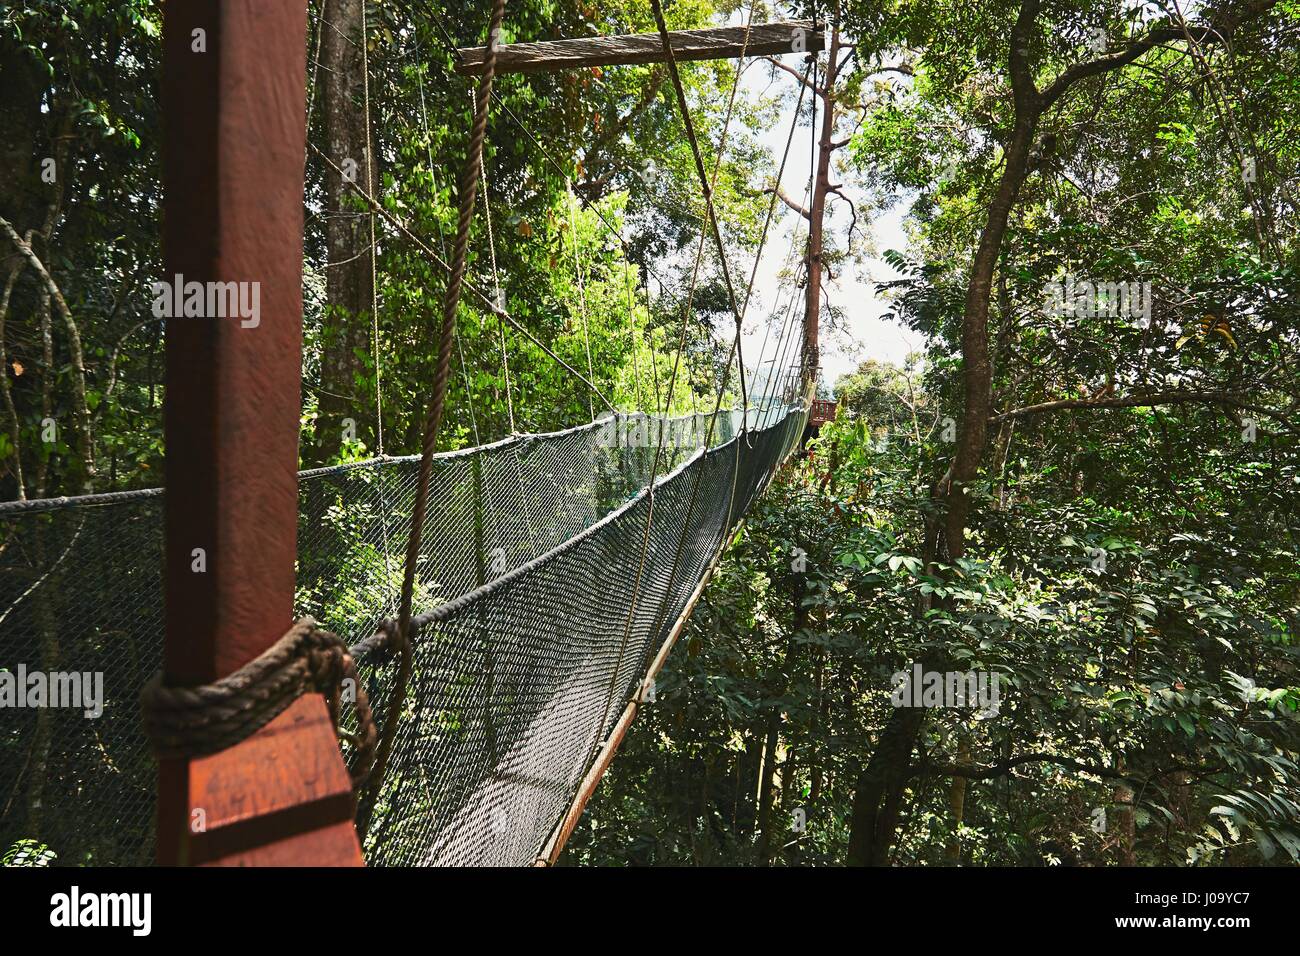 Passerelle surélevée longue sur la cime des arbres, dans les forêts tropicales - Bornéo, Malaisie Banque D'Images